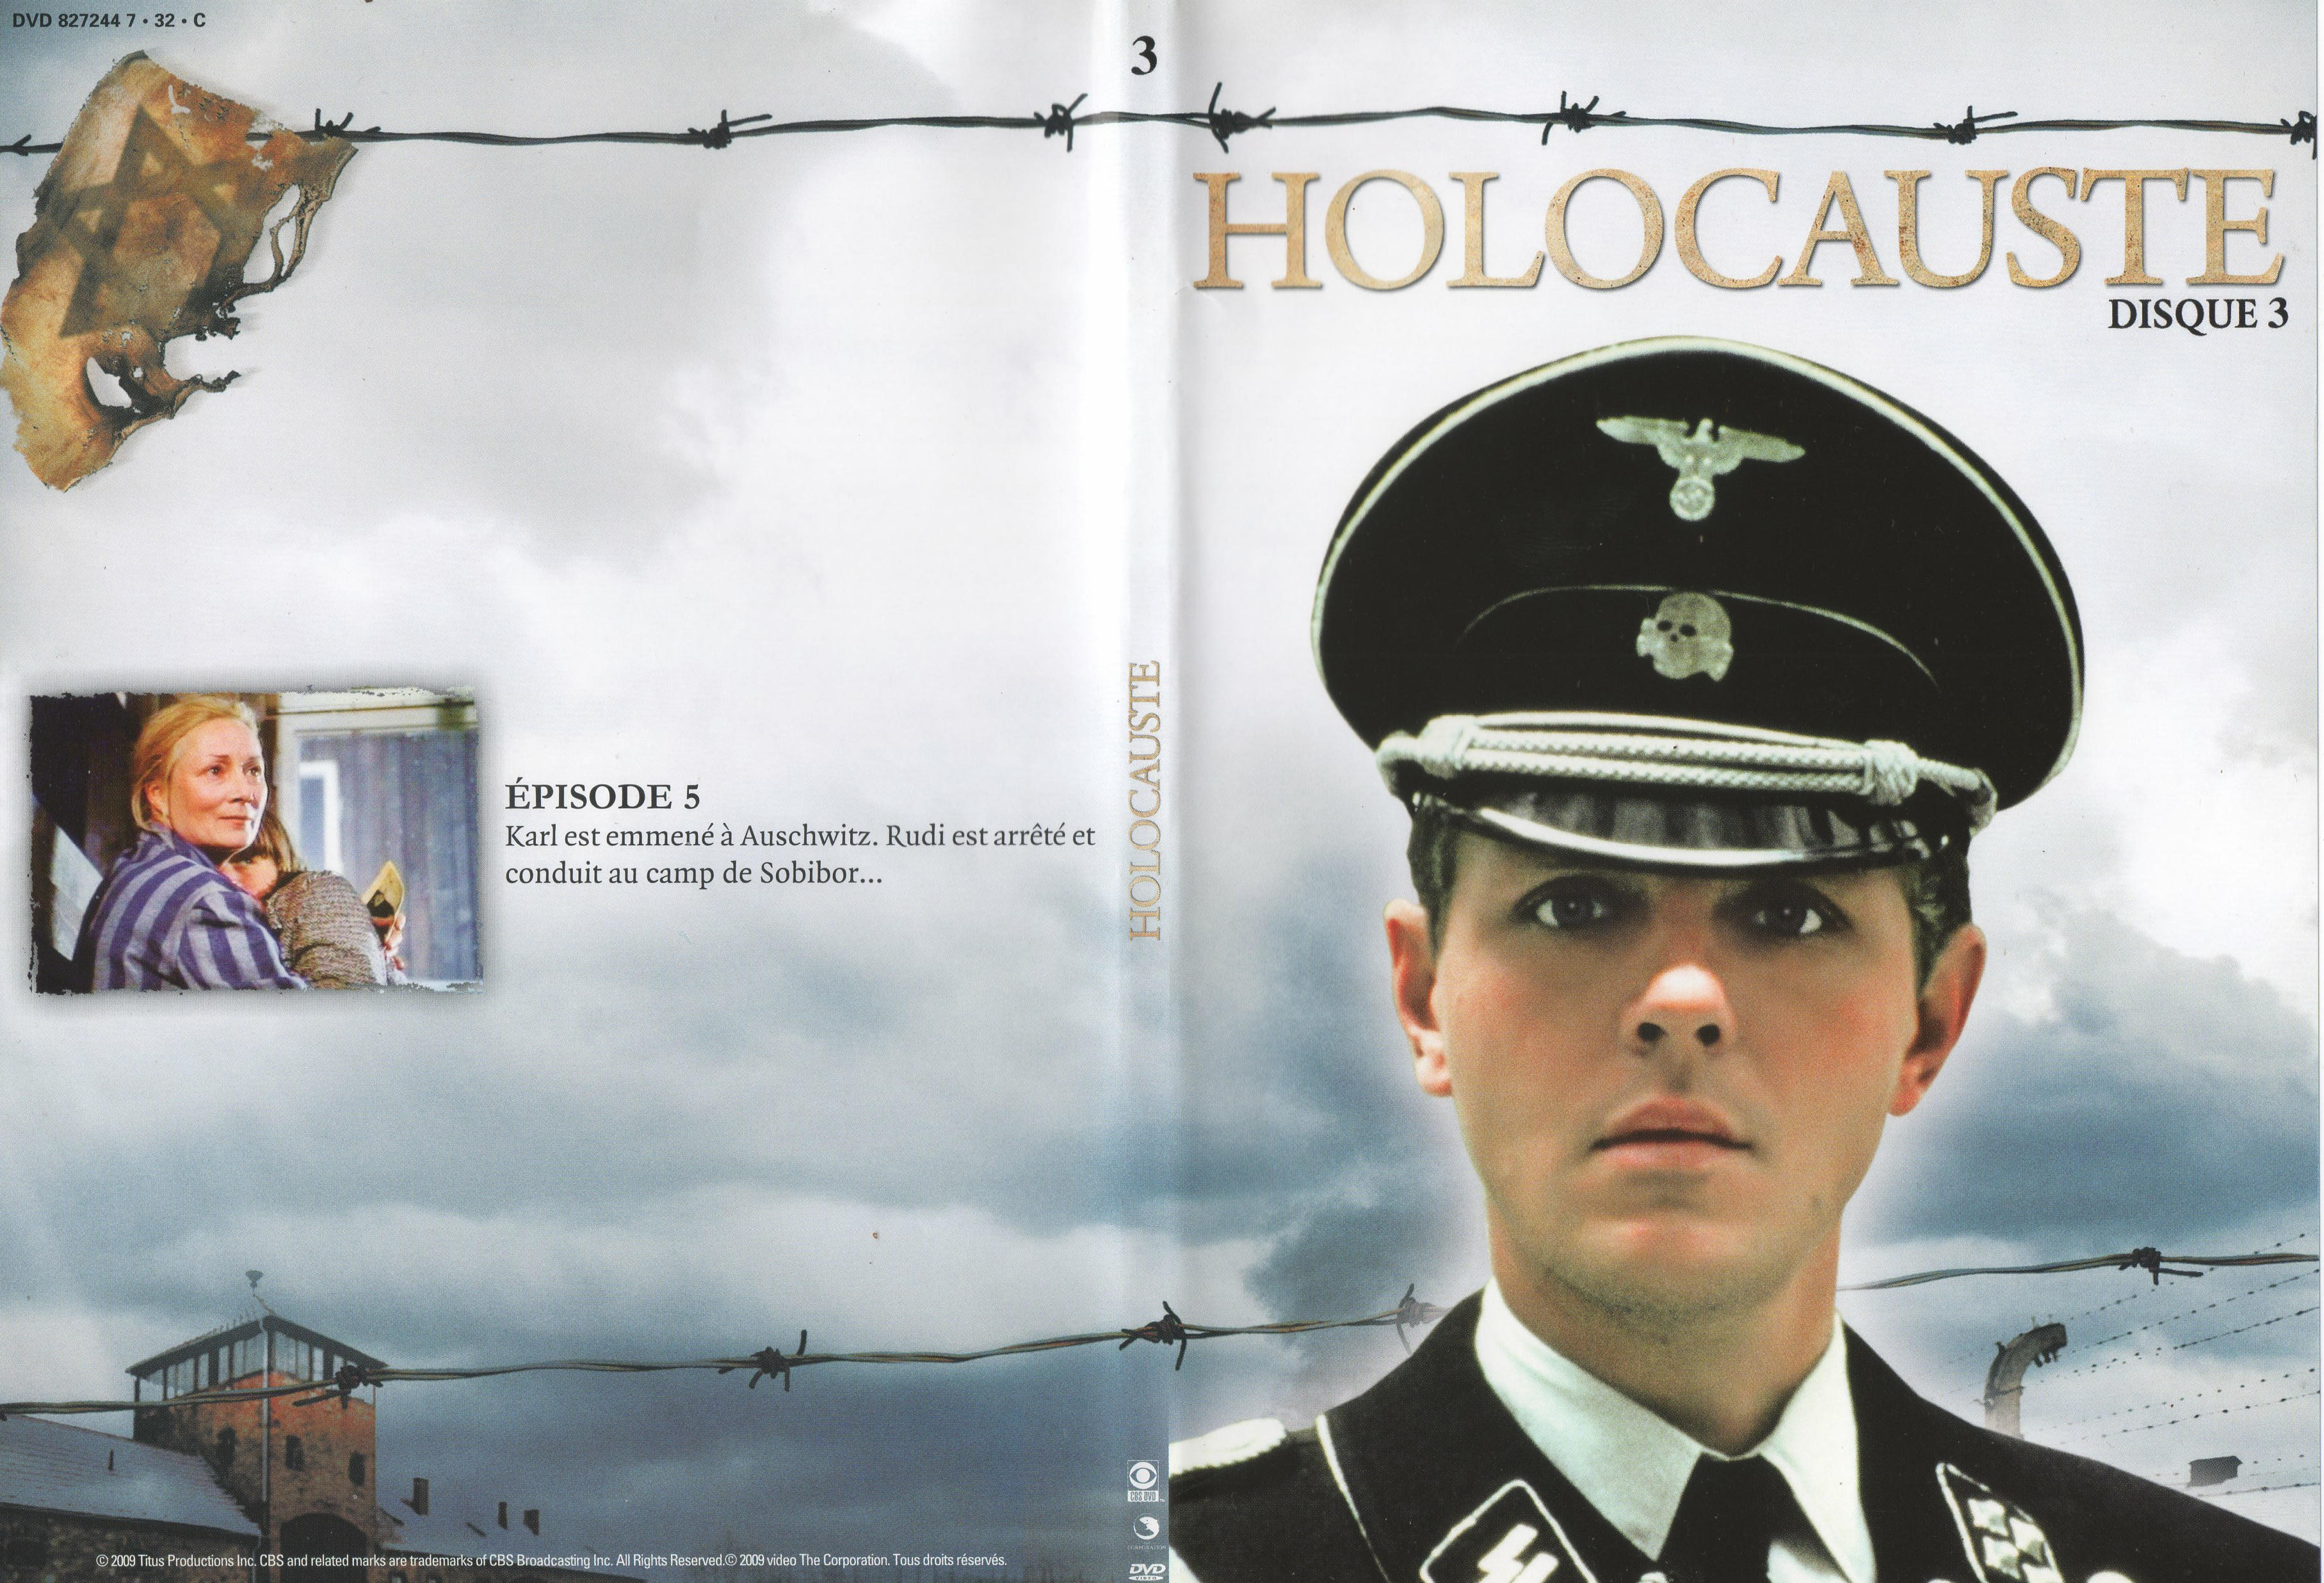 Jaquette DVD Holocauste DVD 3 v2